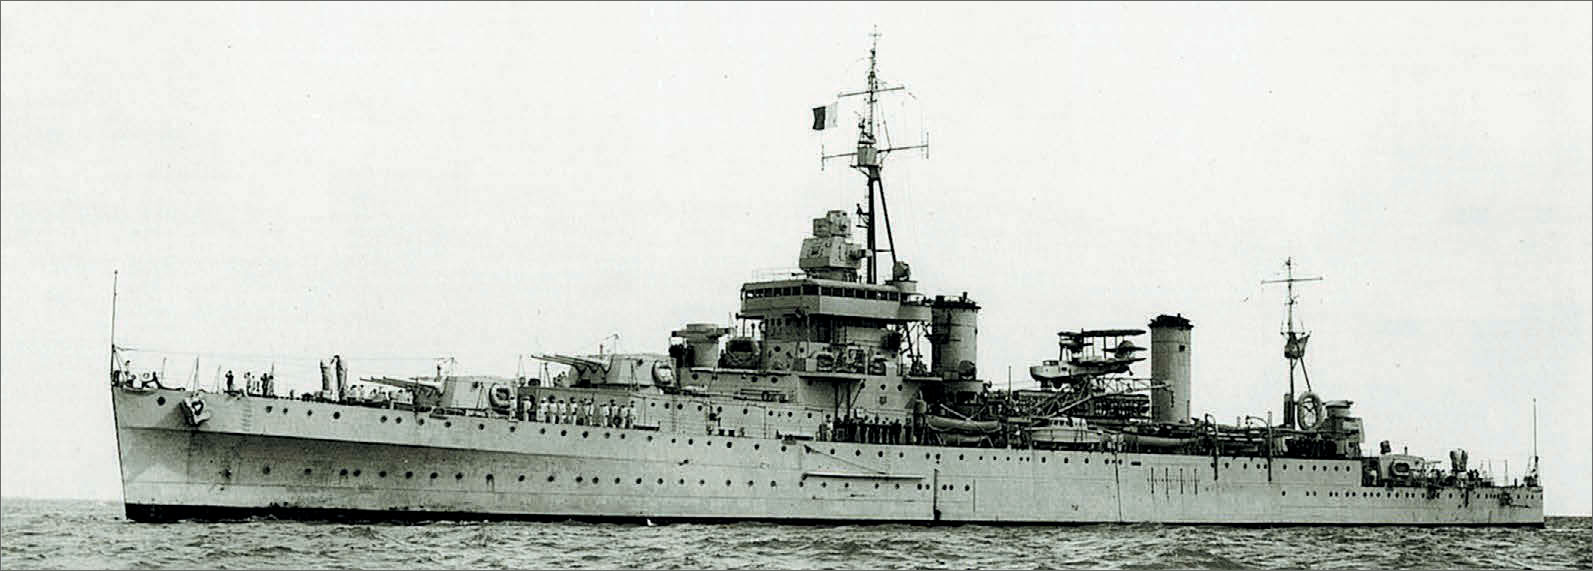 Крейсер «La Argentina», 1950 г.